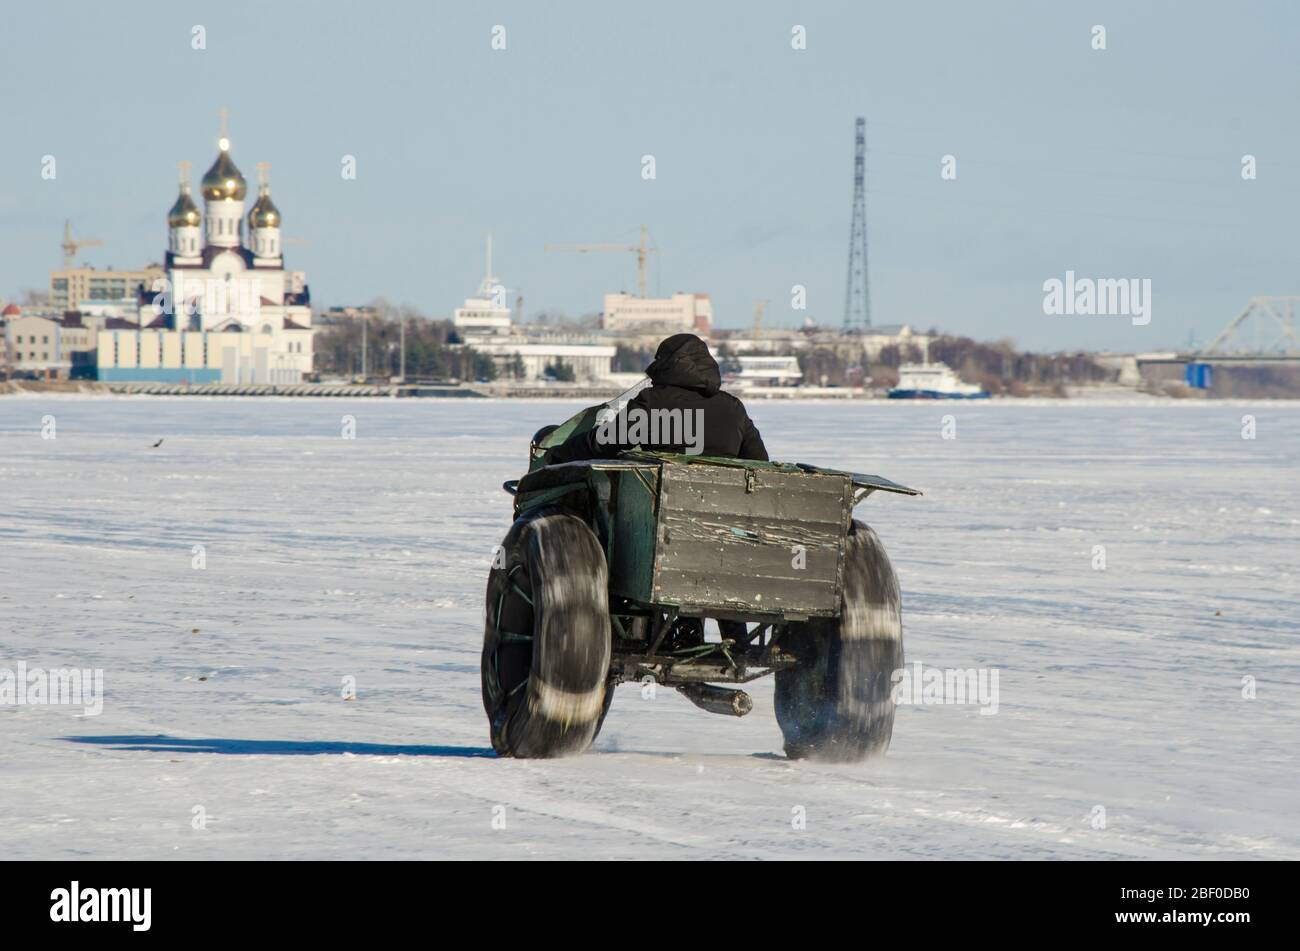 Avril 2020 - Arkhangelsk. Véhicule tout-terrain sur roues basse pression. Russie, région d'Arkhangelsk Banque D'Images